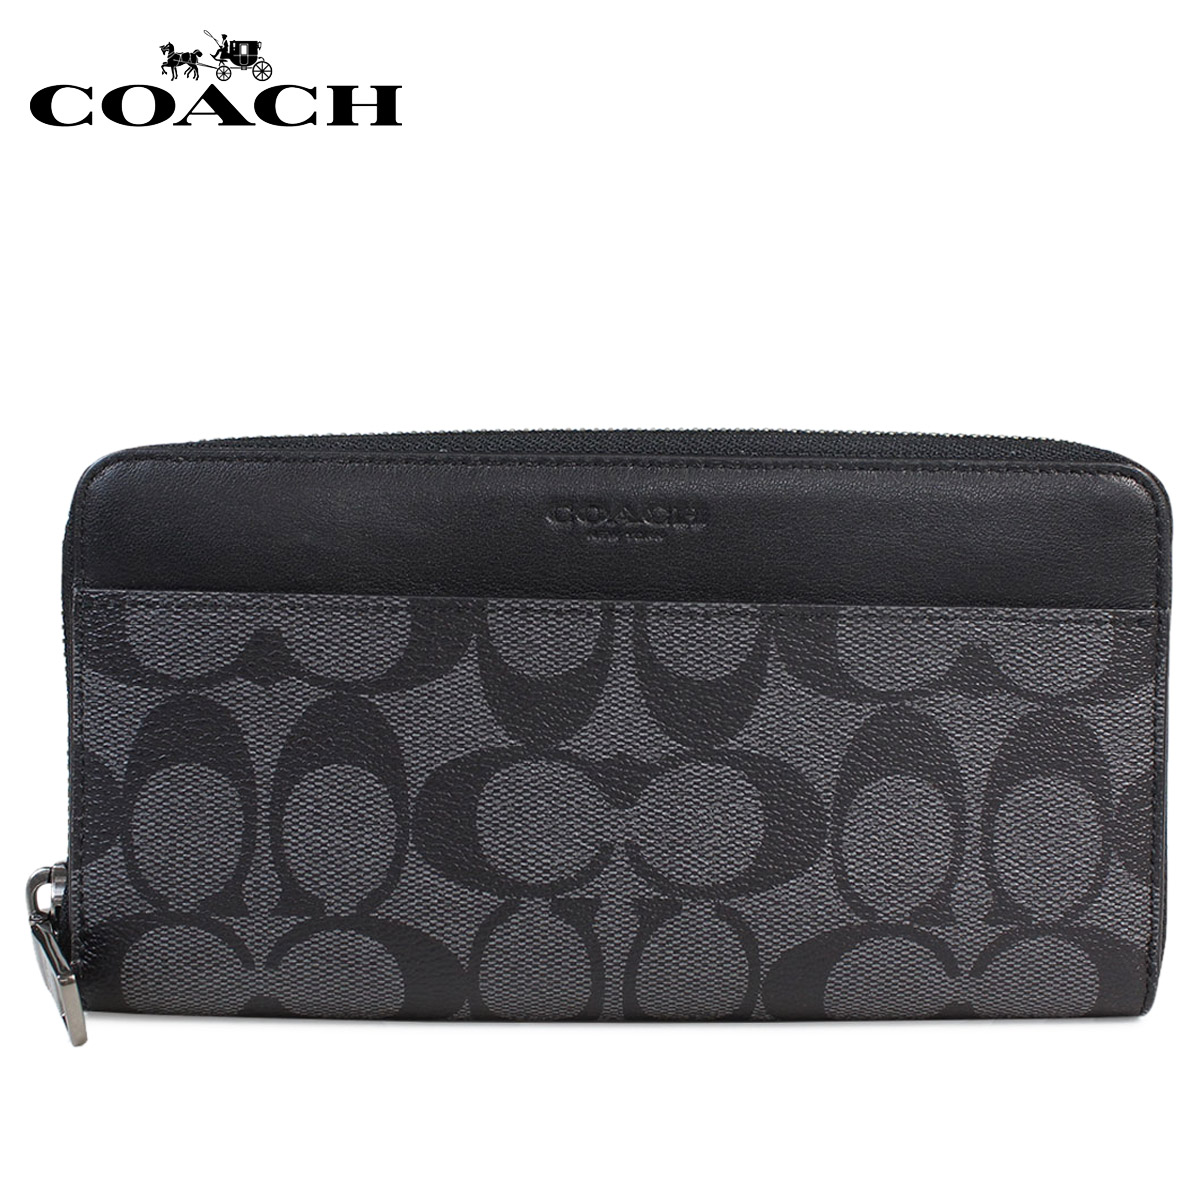 Sugar Online Shop: COACH long wallet men coach wallet leather genuine leather F58112 CQBK ...